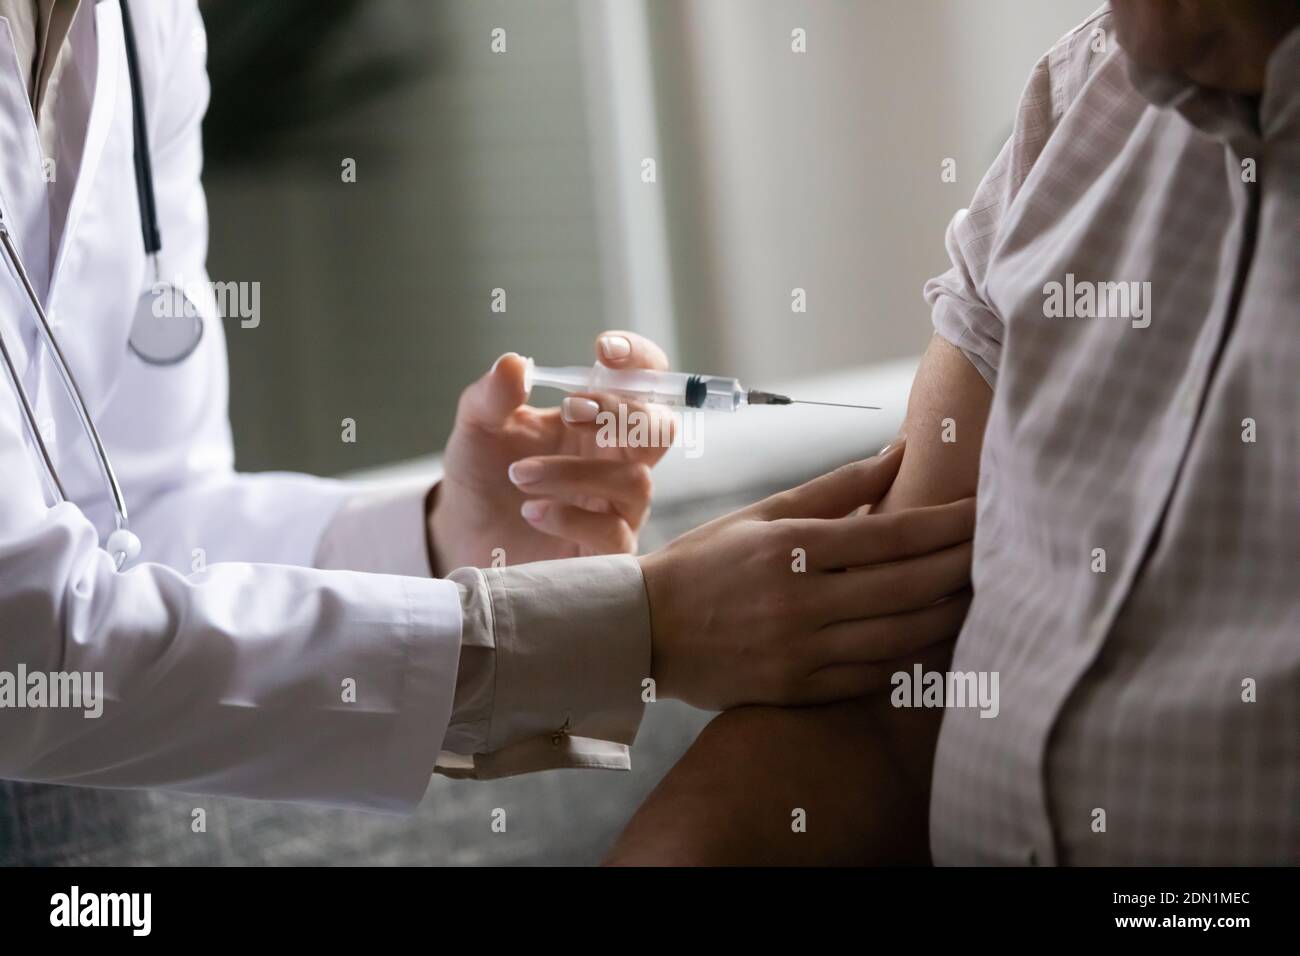 El trabajador médico inyecta la dosis de medicamento en el brazo del paciente Foto de stock